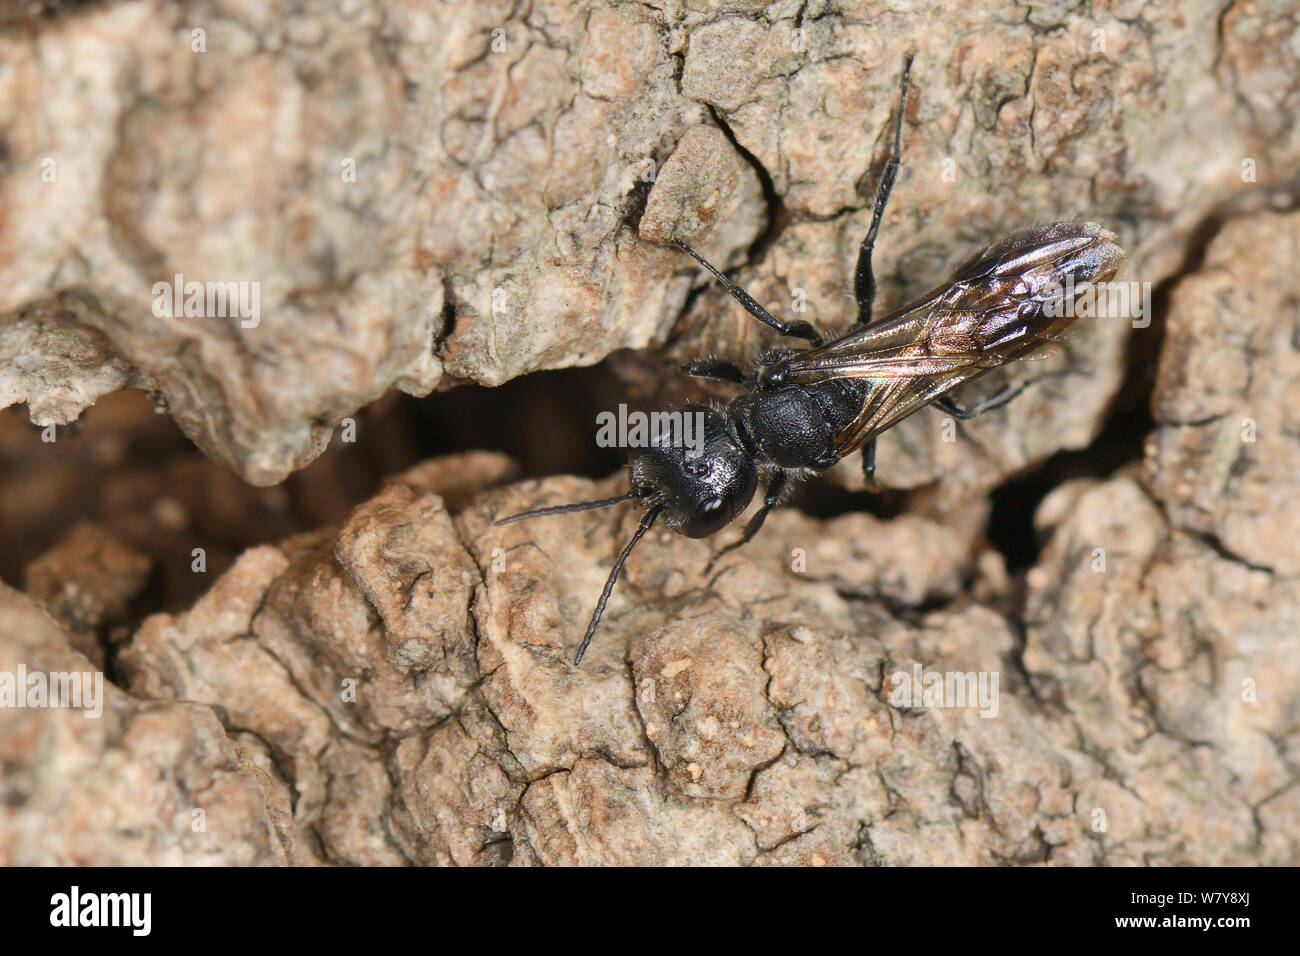 Pulgones avispa / wasp Pemphredon sphecid (sp) que regresan a anidar excavan en la madera muerta de roble base, Gloucestershire, Reino Unido, Octubre. Foto de stock